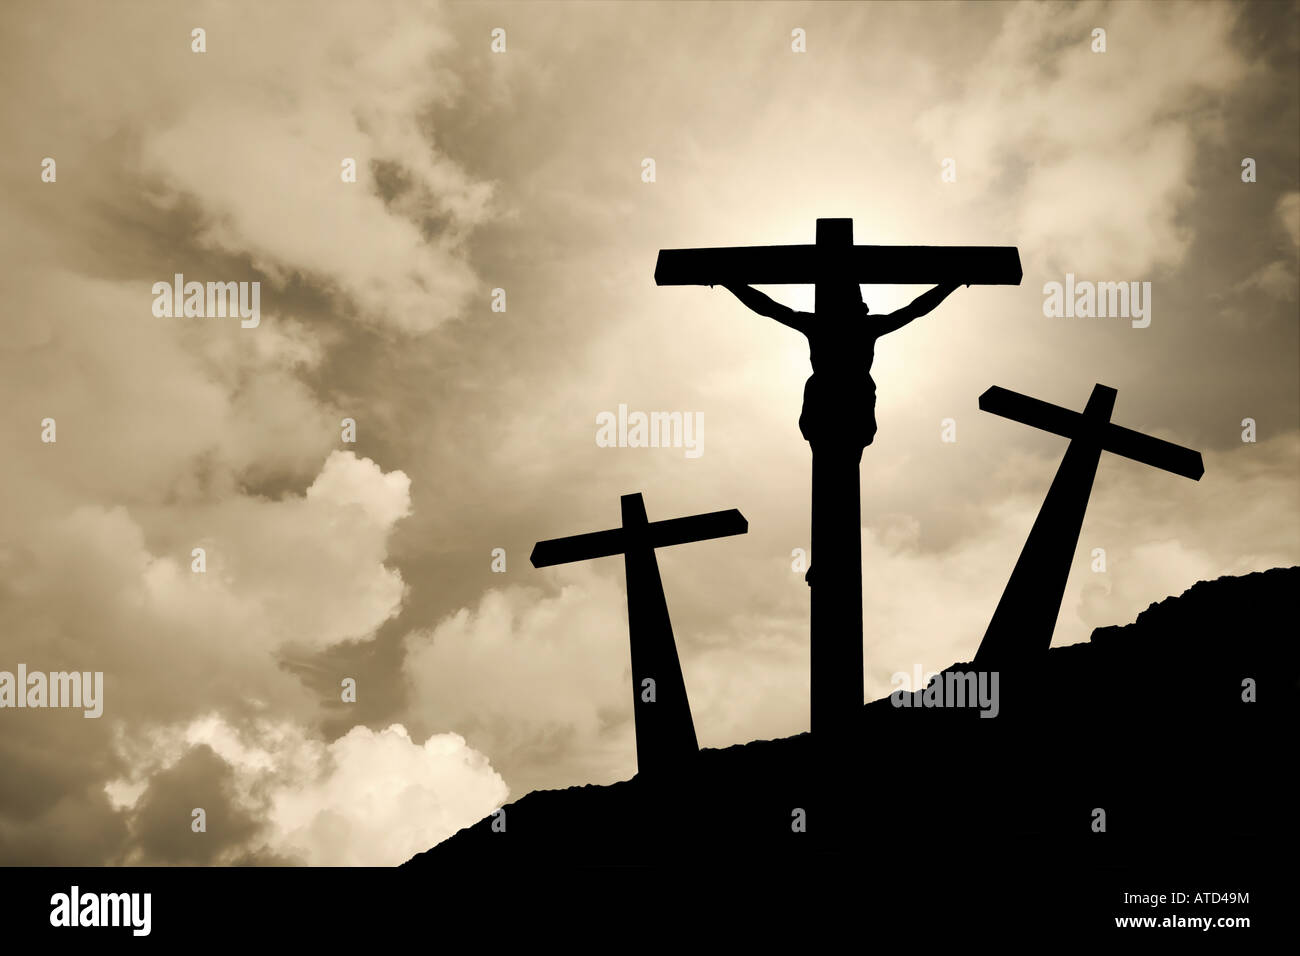 Jesus Christus gekreuzigt in Golgatha / Kreuzigung Ostern Kruzifix Golgatha Leidenschaft beleuchtete silhouette Kreuz religion Gott das Christentum Wolken Sturm Himmel Stockfoto